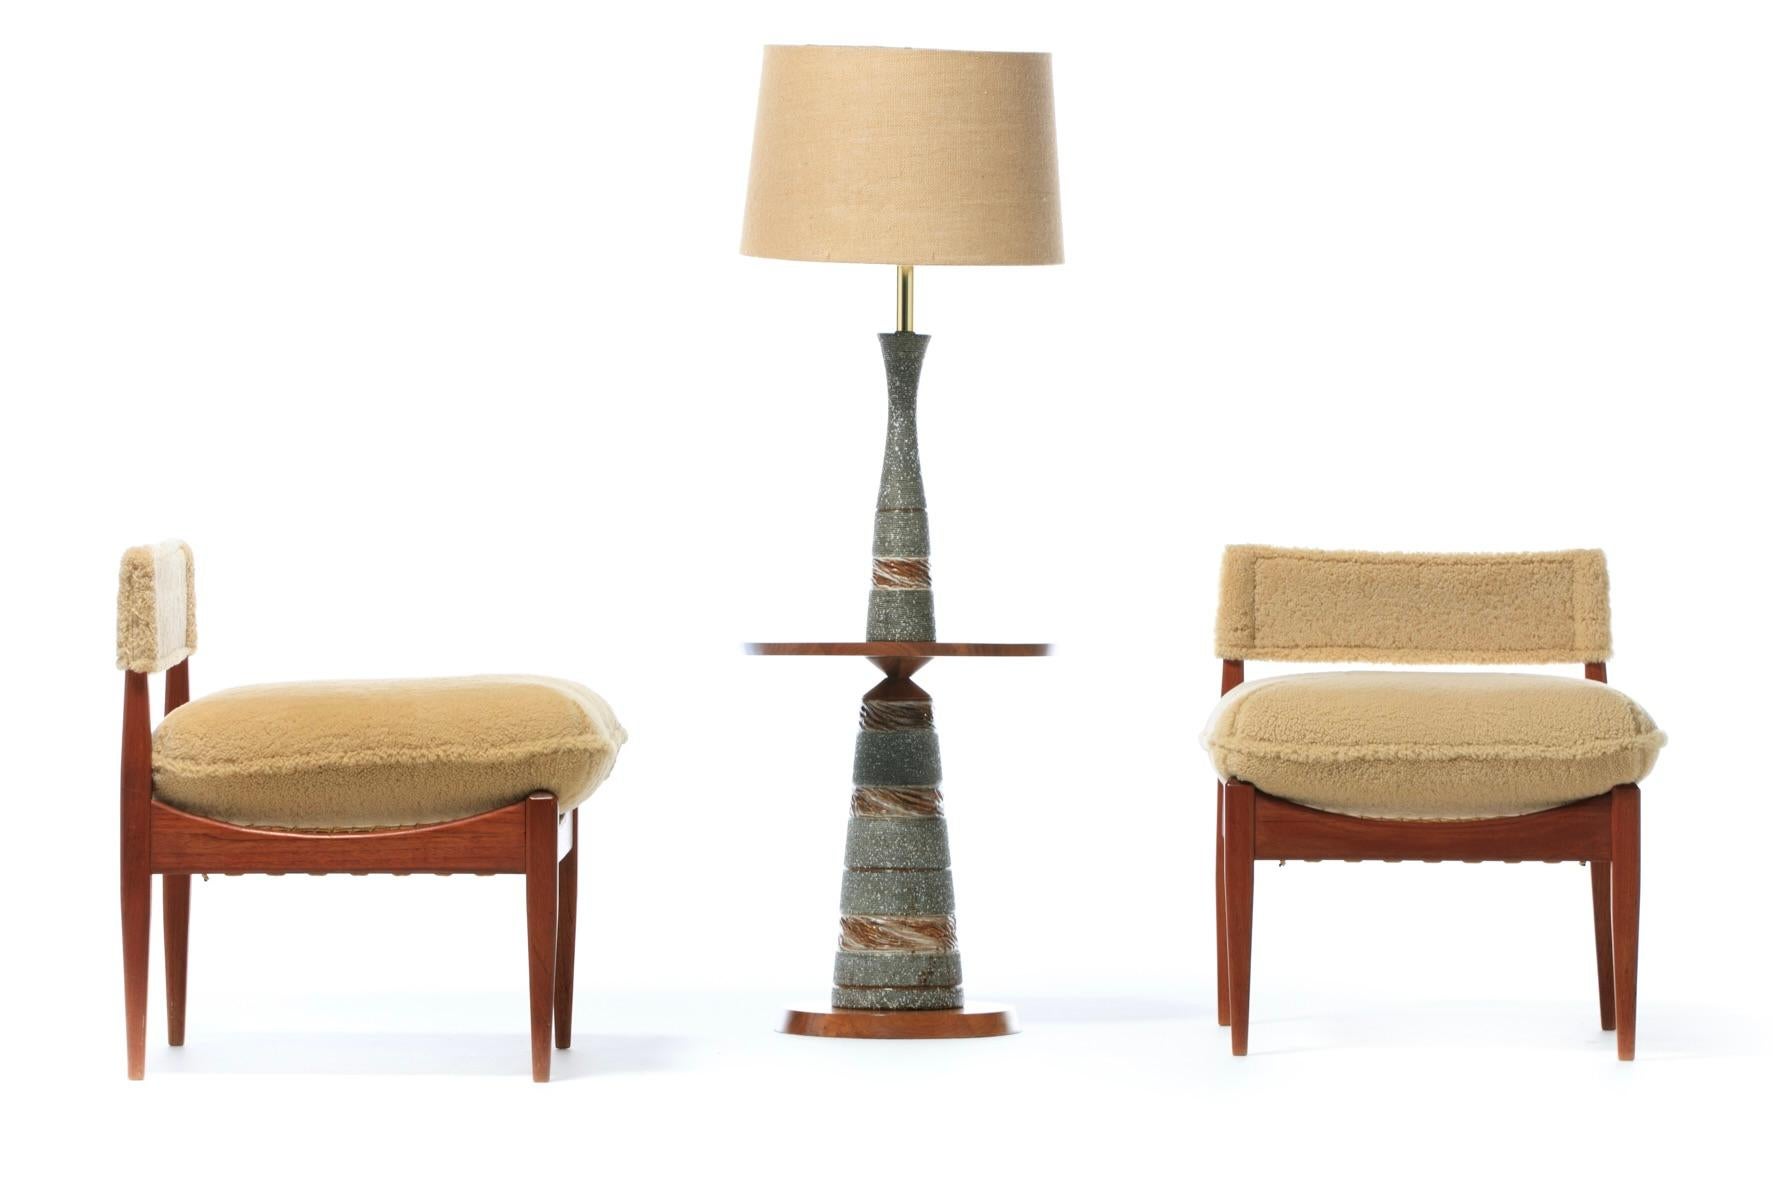 Stilvolle Paar Kristian Vedel zugeschrieben niedrigen Profil dänischen modernen Lounge-Sessel neu professionell gepolstert in super weichen Hand genäht Palomino Shearling. Wenn Sie ein Bewunderer von Möbeln sind, die Ihnen beim Betreten eines Raumes